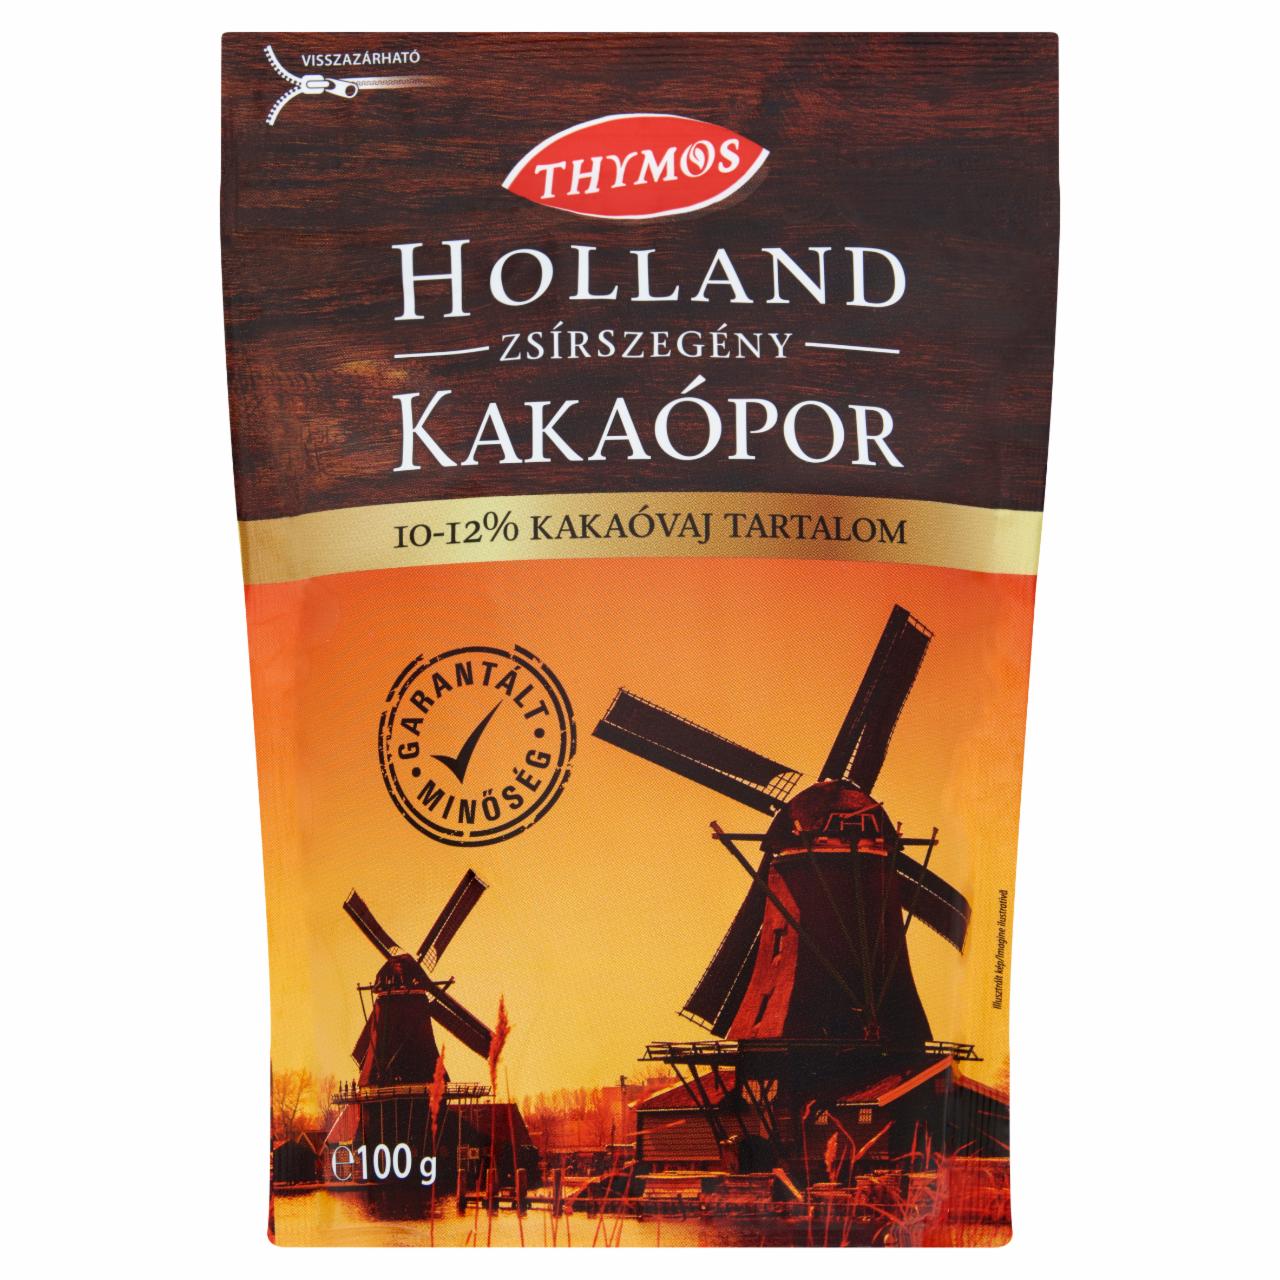 Képek - Thymos holland zsírszegény kakaópor 100 g